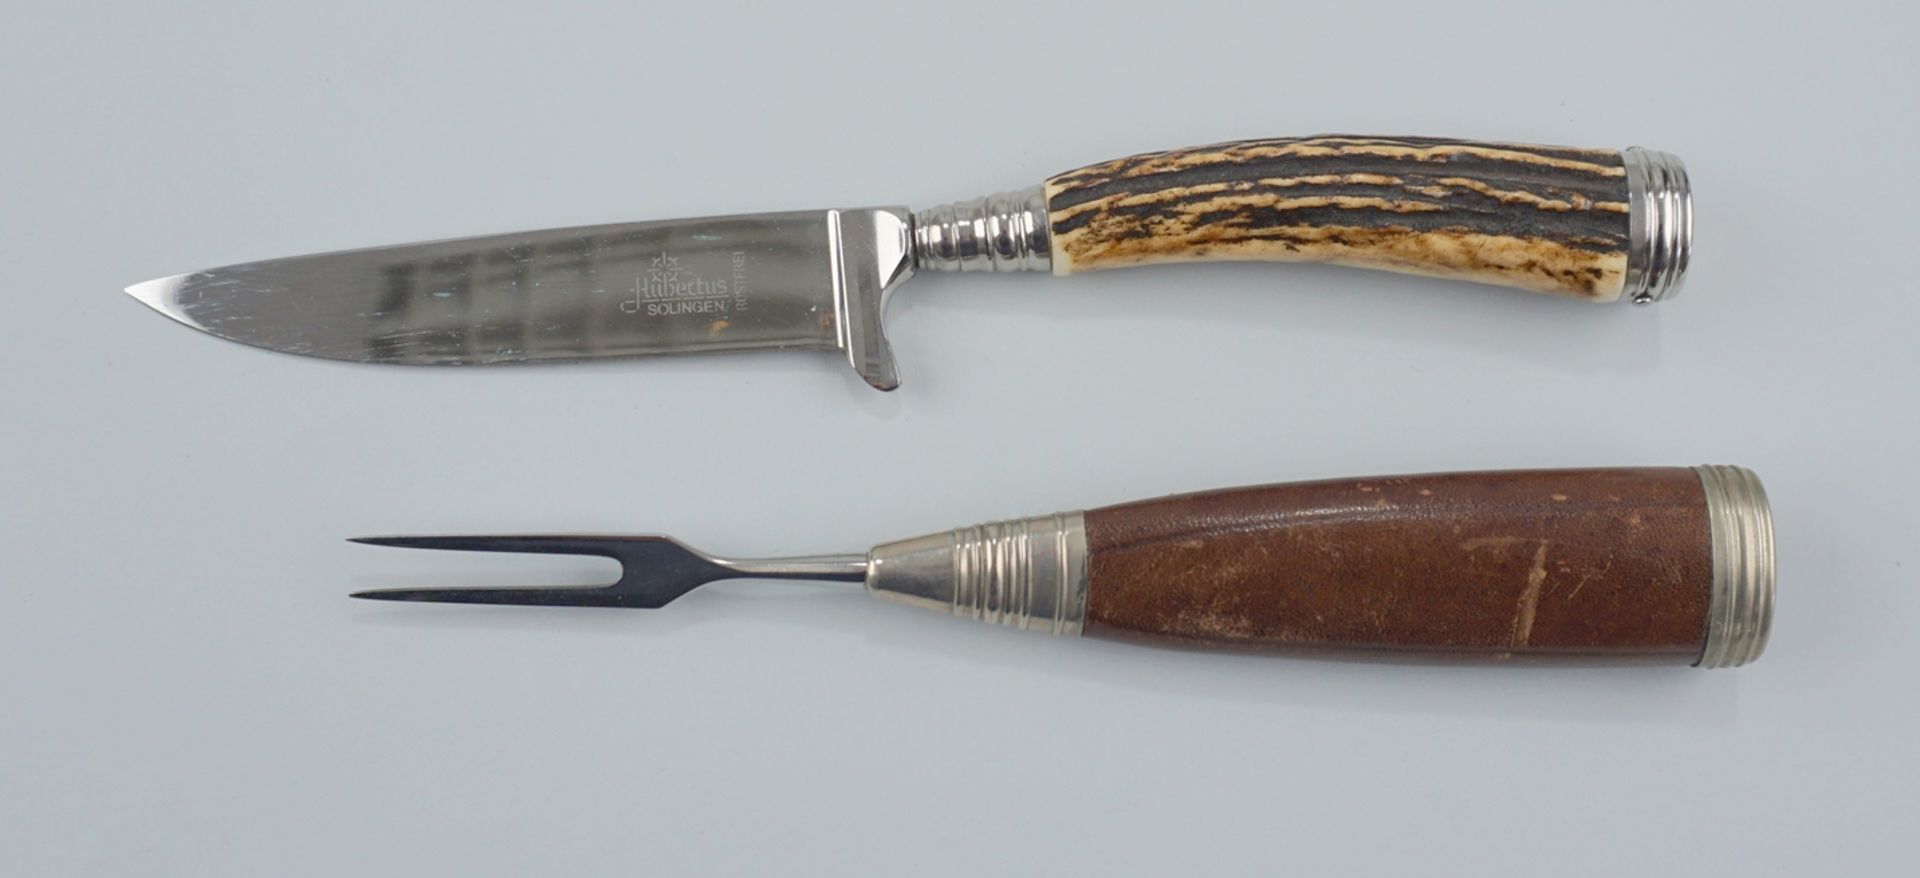 3 Jagdmesser, u.a. Weidbesteck Hubertus, GES und Storz Mehrzweckmesser - Bild 2 aus 2